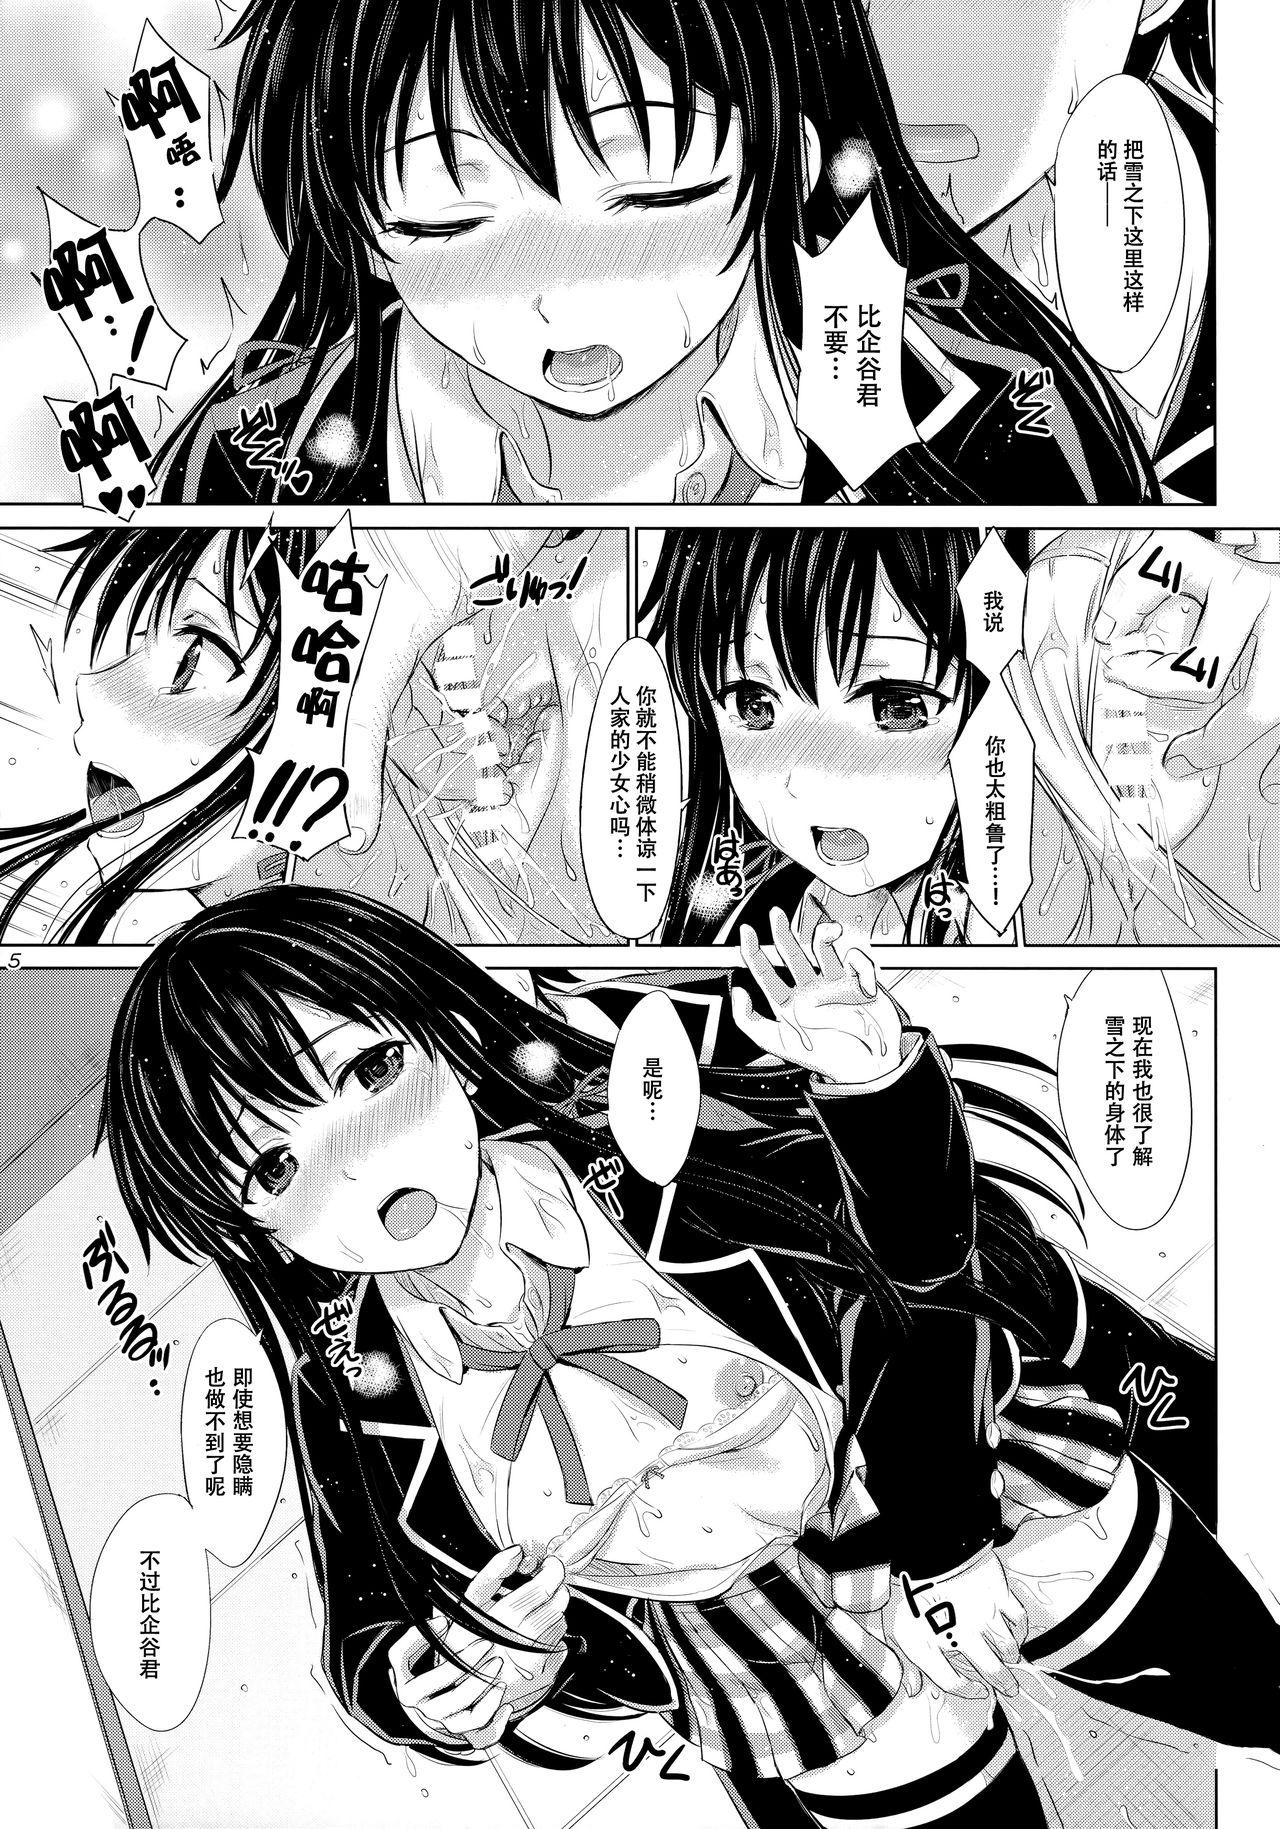 Load Sanrenkyuu wa Asa made Nama Yukinon. - Yahari ore no seishun love come wa machigatteiru Class - Page 5